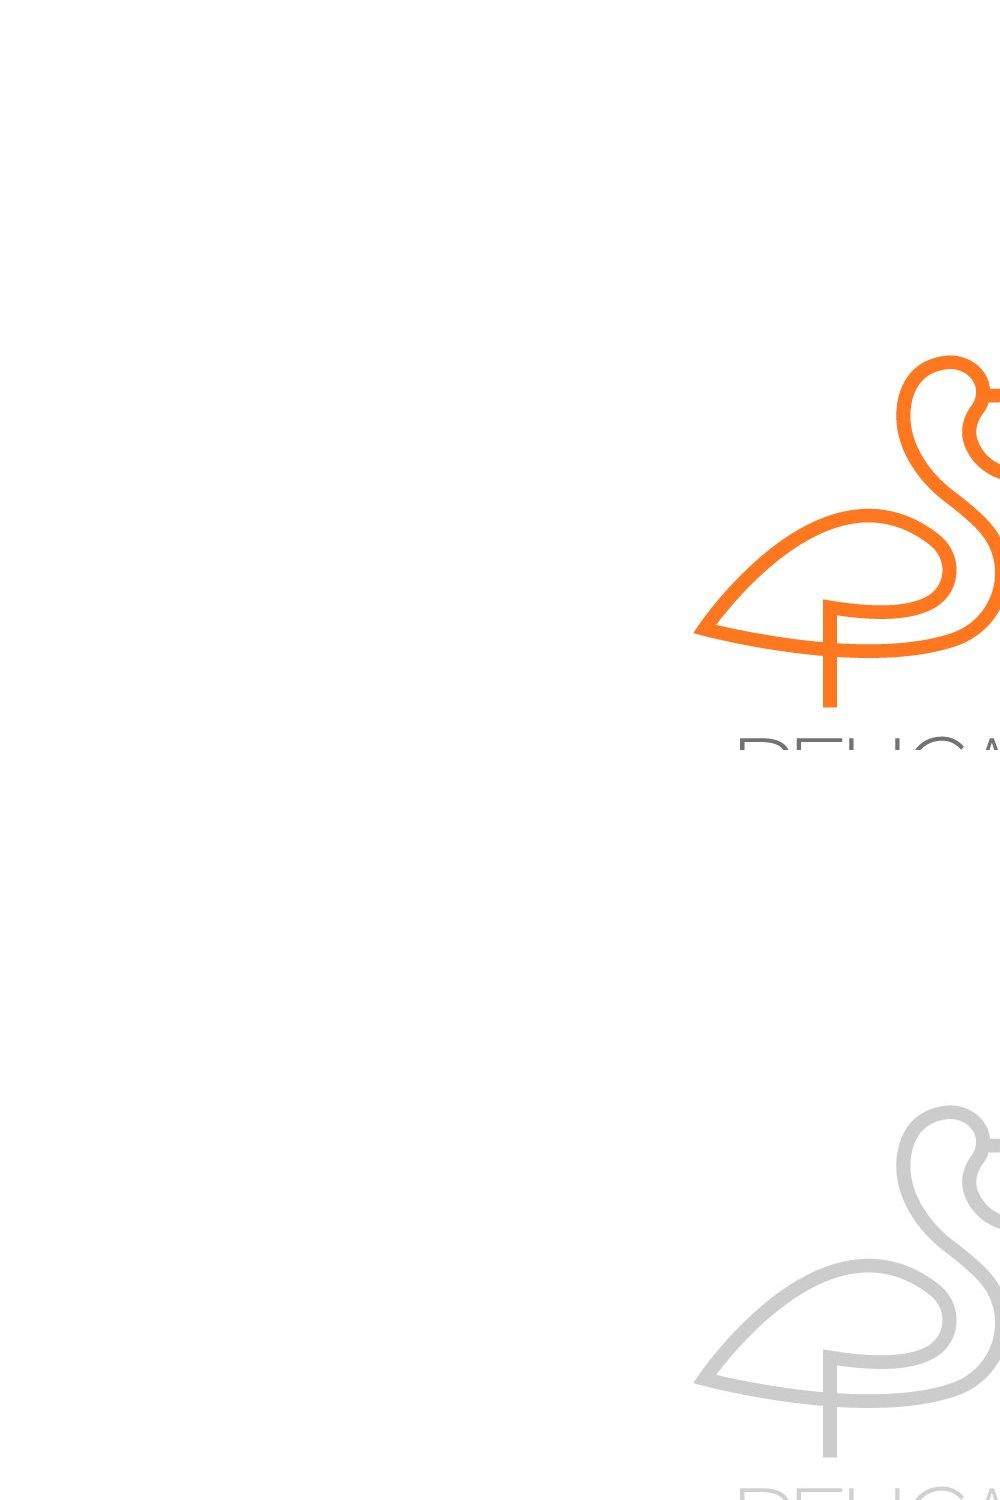 Logomark Launches Exclusive Pelican Line of Drinkware